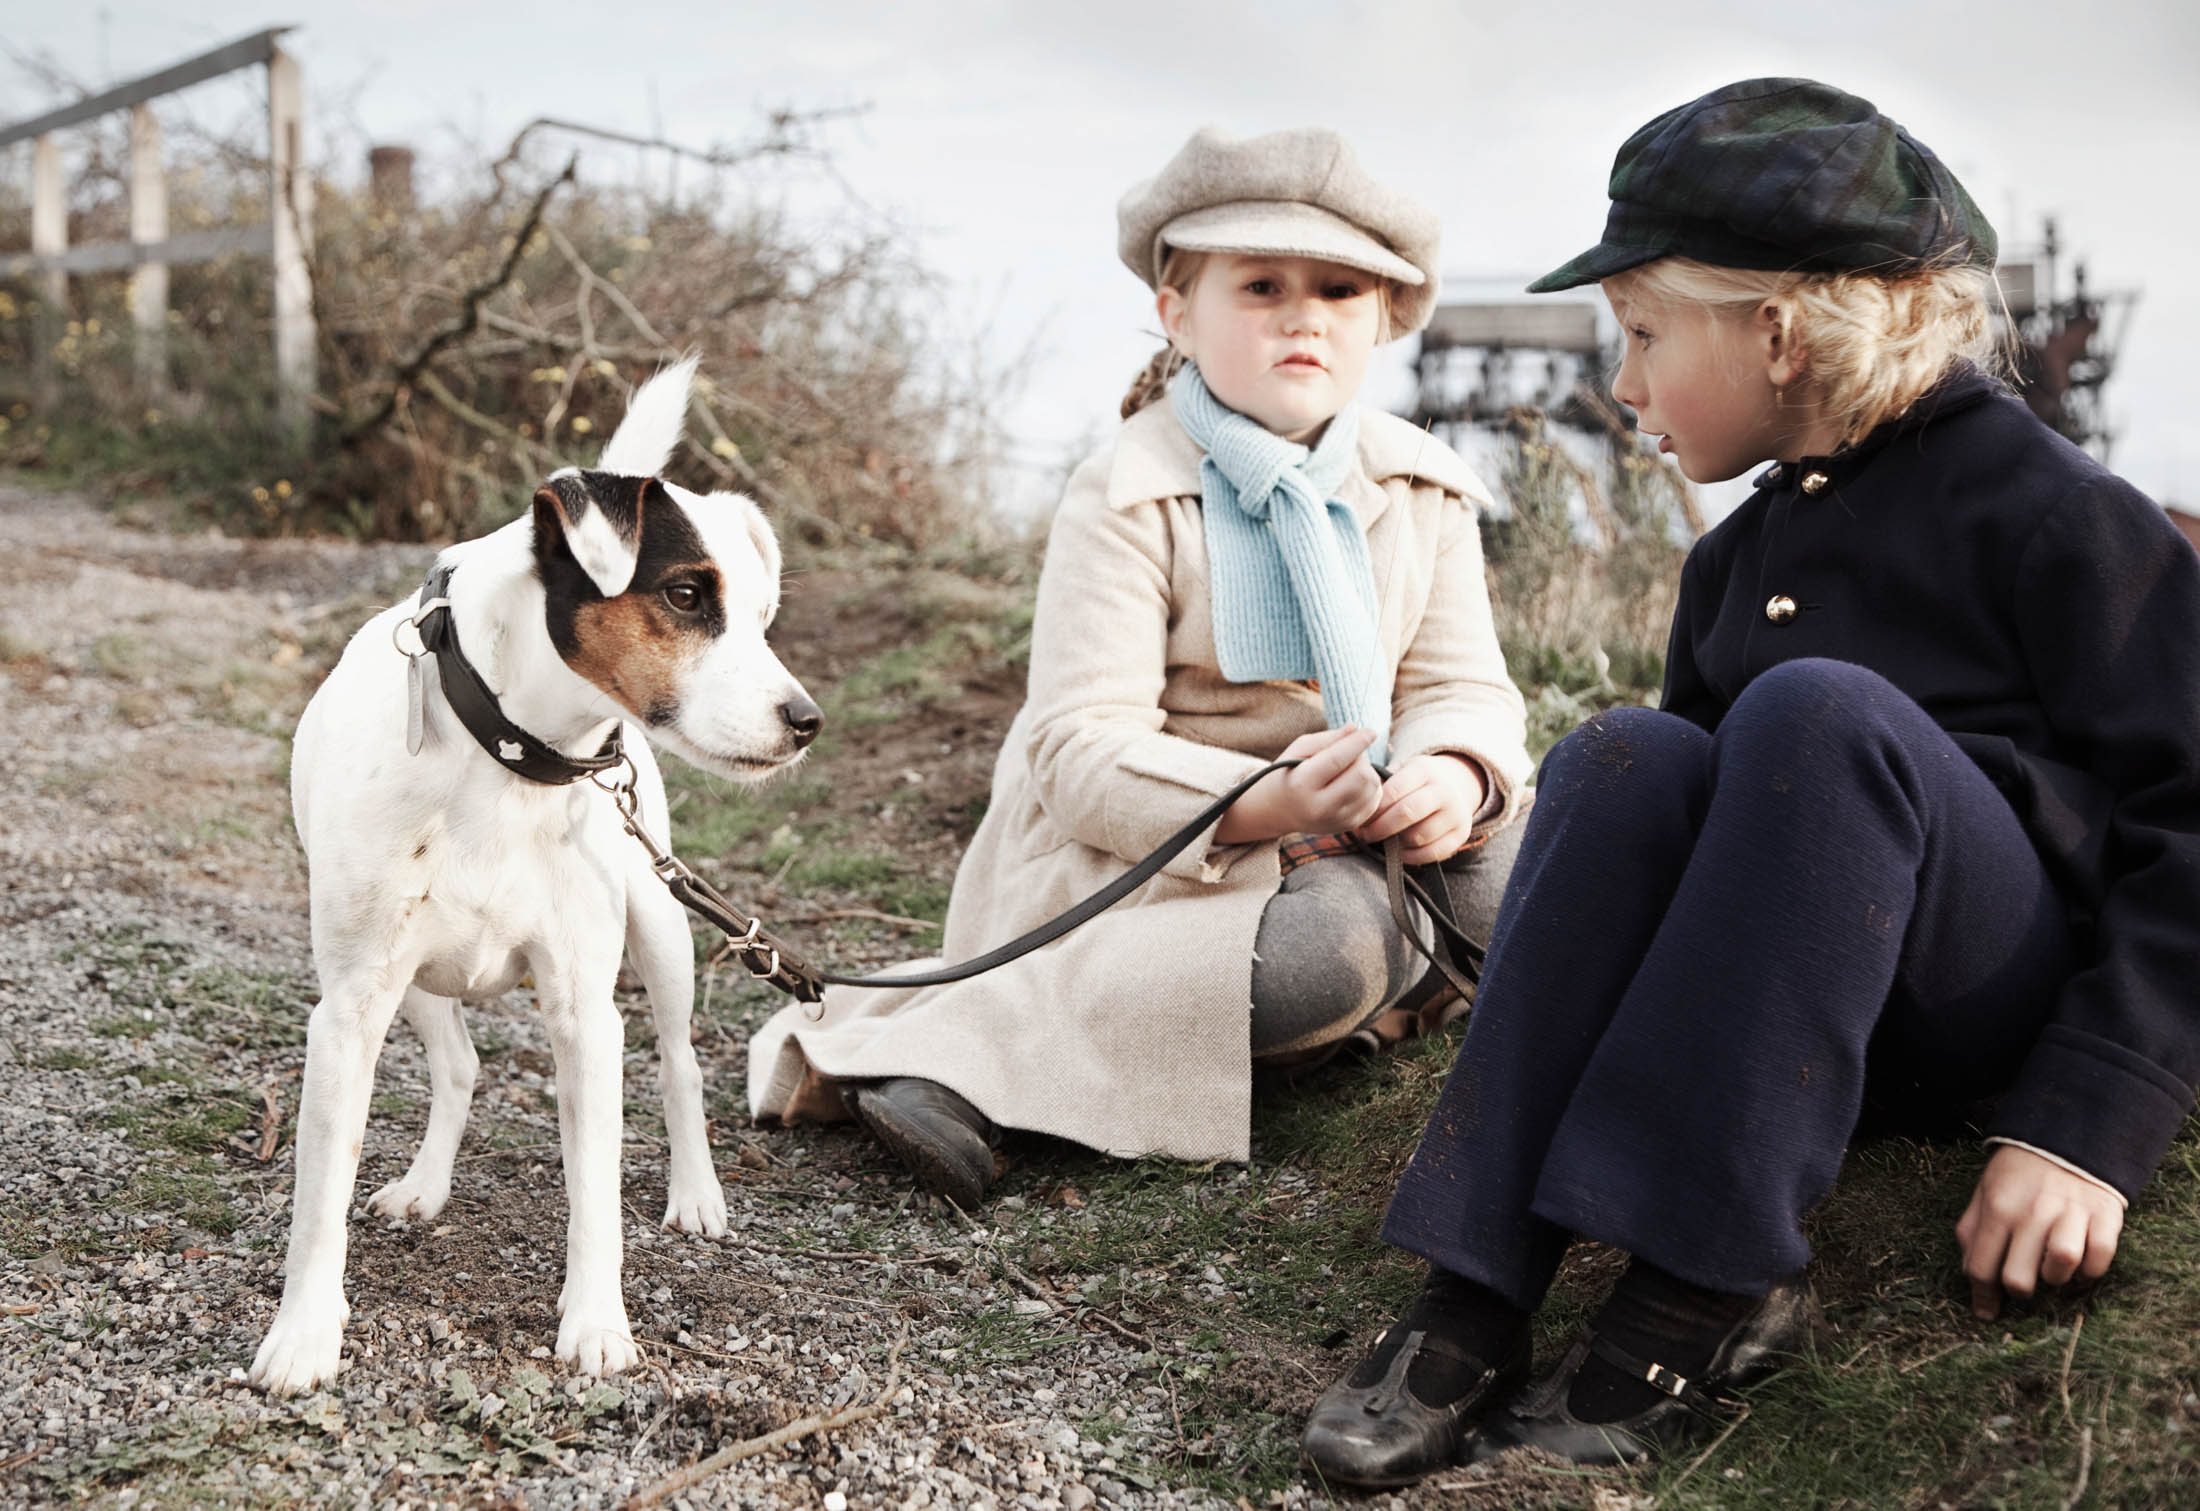 Zwei Kinder in Vintage-Kleidung sitzen im Freien, eines hält einen angeleinten Jack Russell Terrier. Die Kulisse ist rustikal und es ist ein sonniger Tag. © Fotografie Tomas Rodriguez